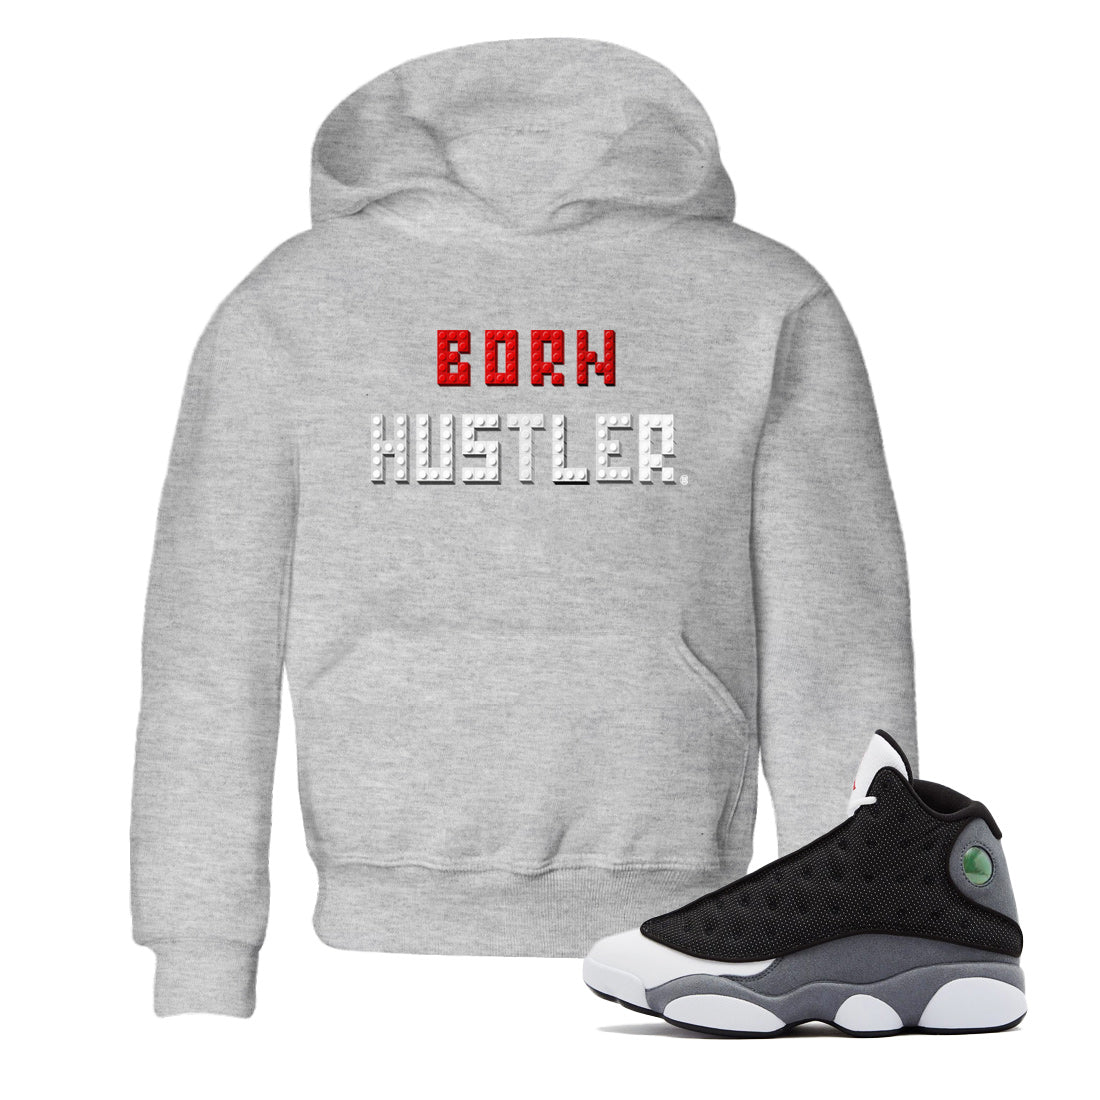 Air Jordan 13 Black Flint Sneaker Match Tees Brick Born Hustler t shirt Air Jordan 13 Retro Black Flint Sneaker Tees Kids Shirts Heather Grey 1